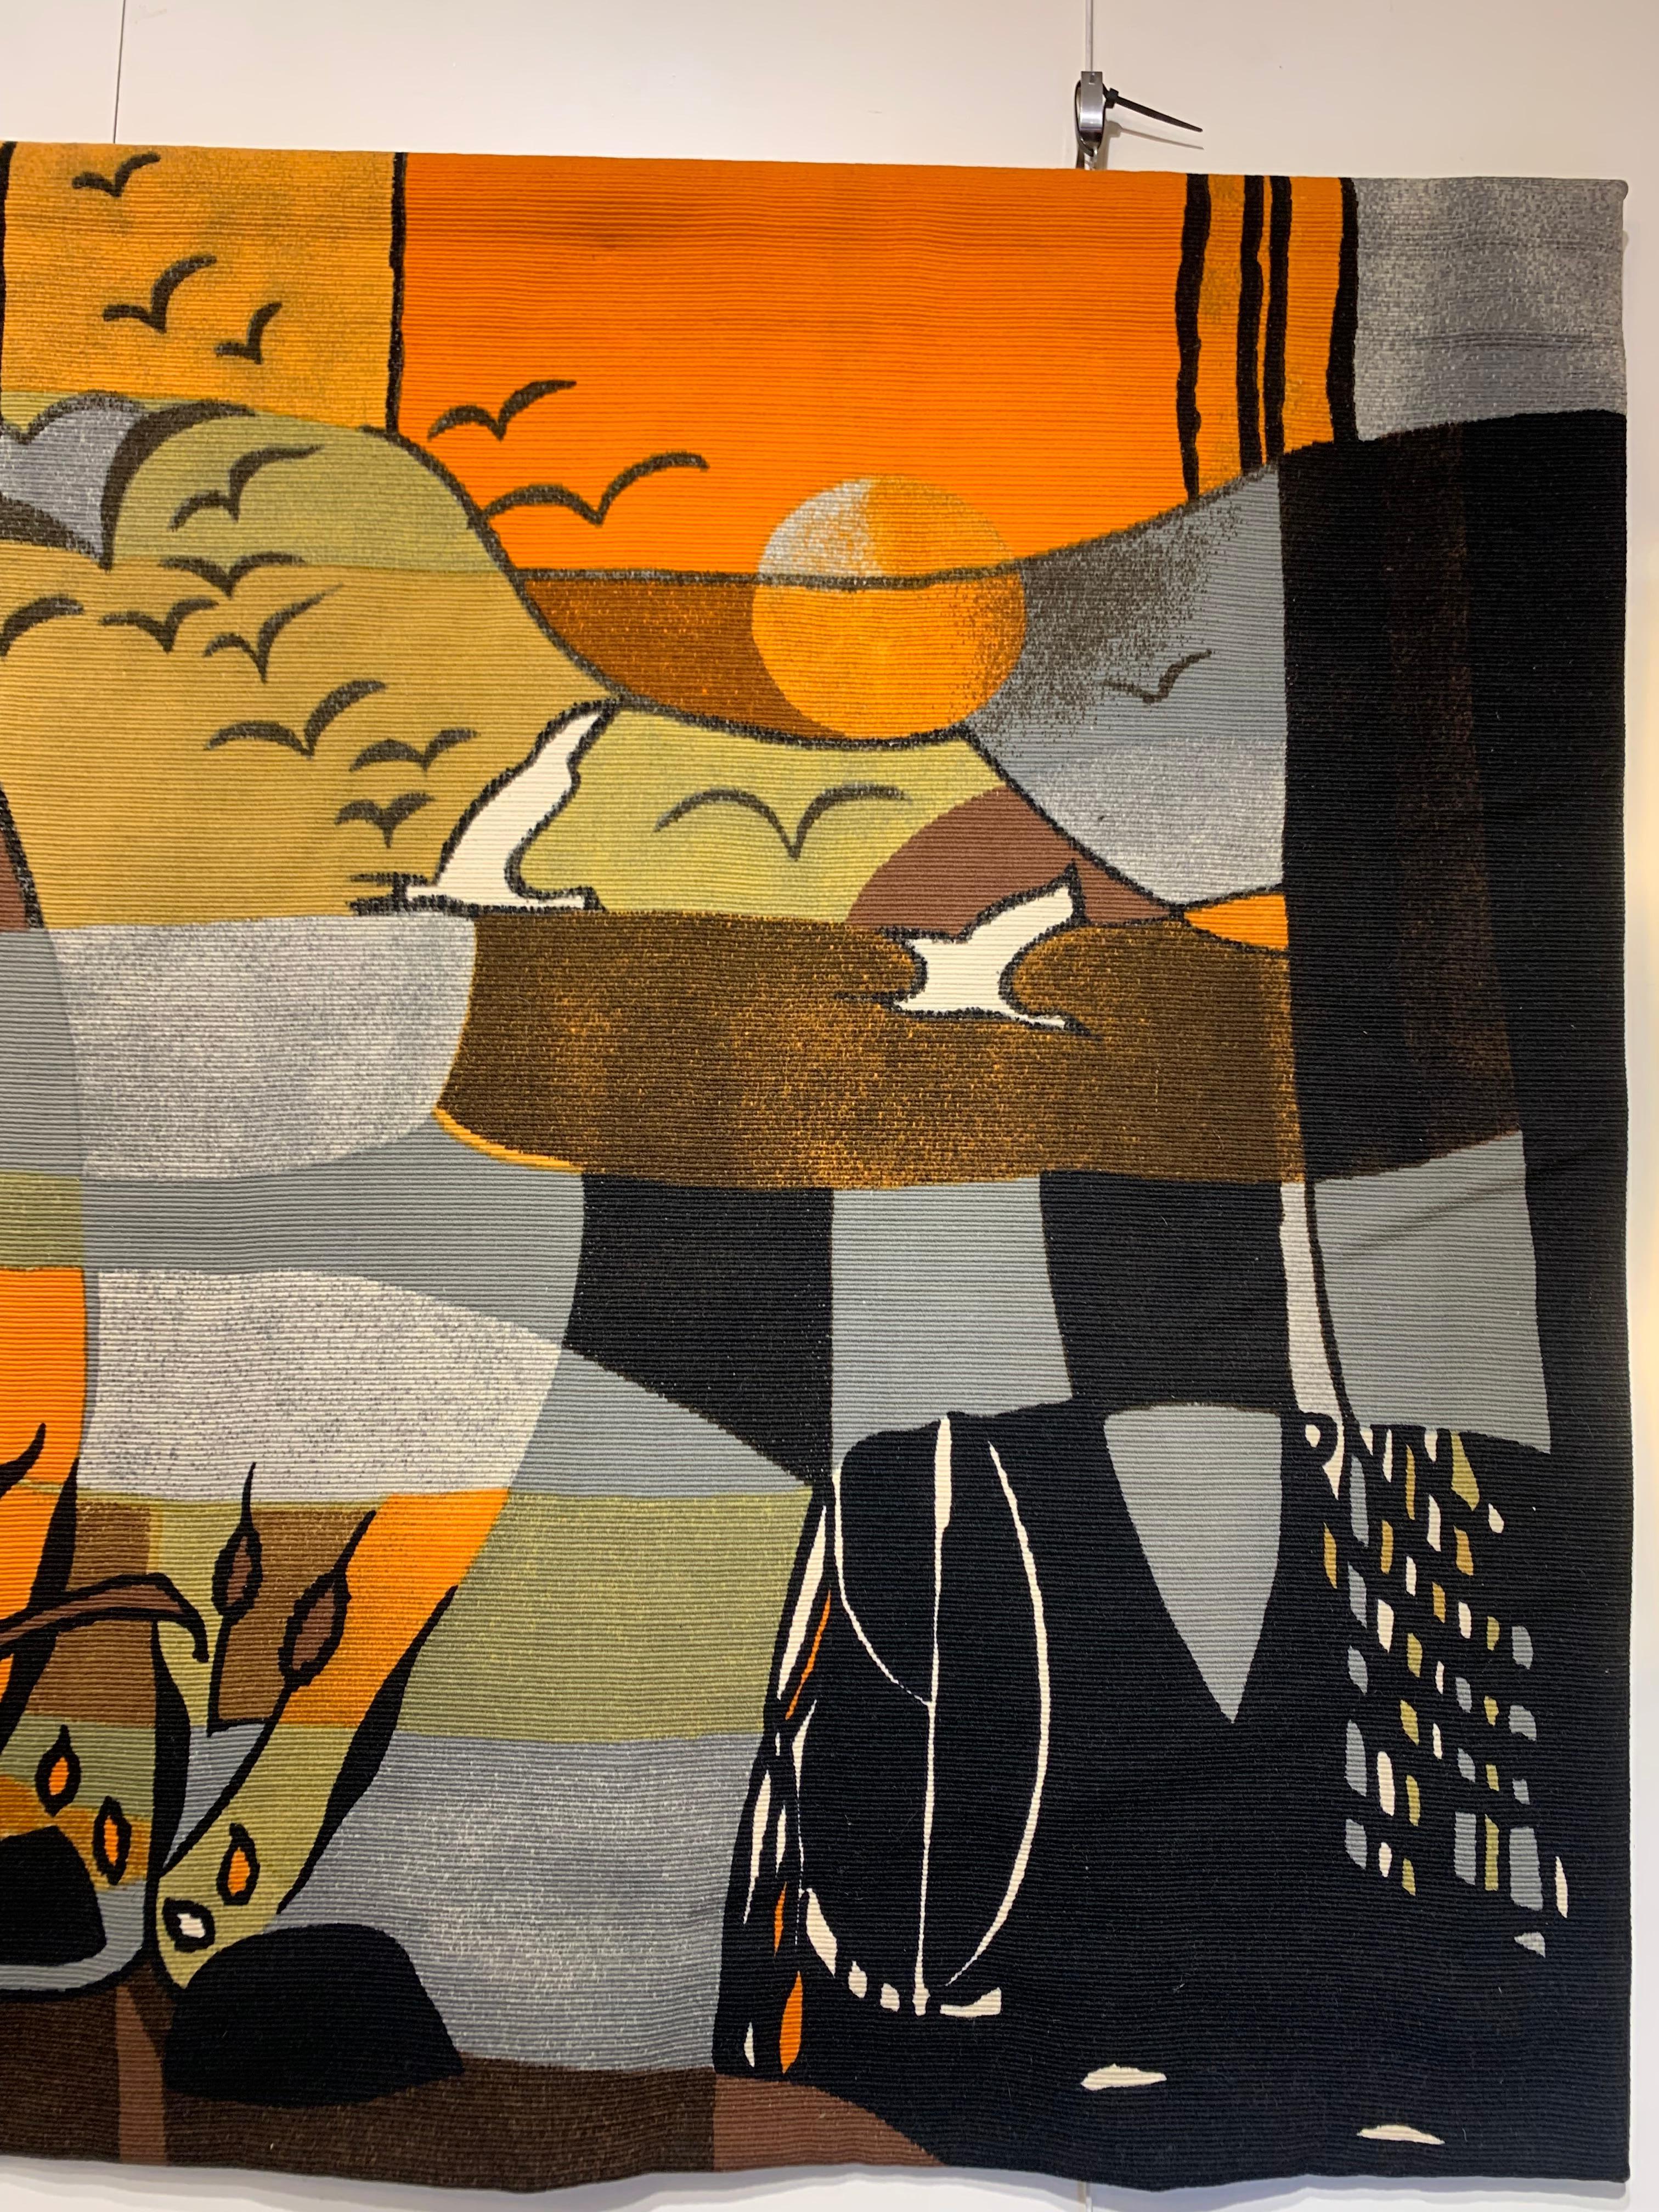 Dekorativer Wandteppich aus den 1970er Jahren, signiert von Michele Cahard, handgewebt aus Wolle. Es zeigt eine Naturszene mit Vögeln, die dem Sonnenuntergang entgegenfliegen, über einem Sumpf mit Pflanzen und einigen Bäumen, unter Verwendung